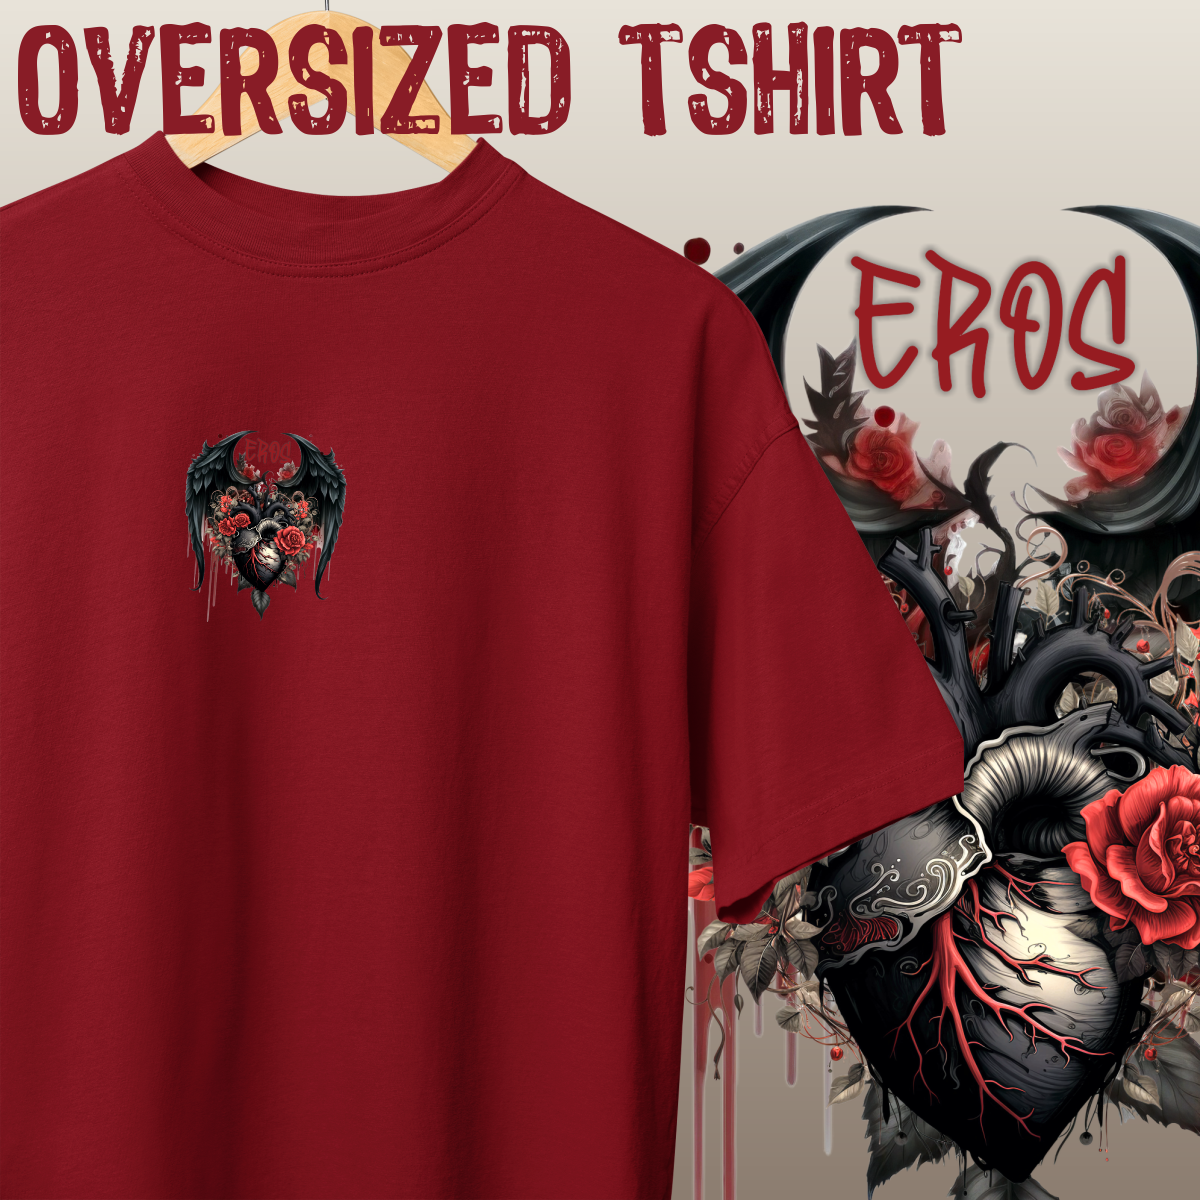 Nome do produto: Oversized Tshirt - MINI EROS - Seremcores